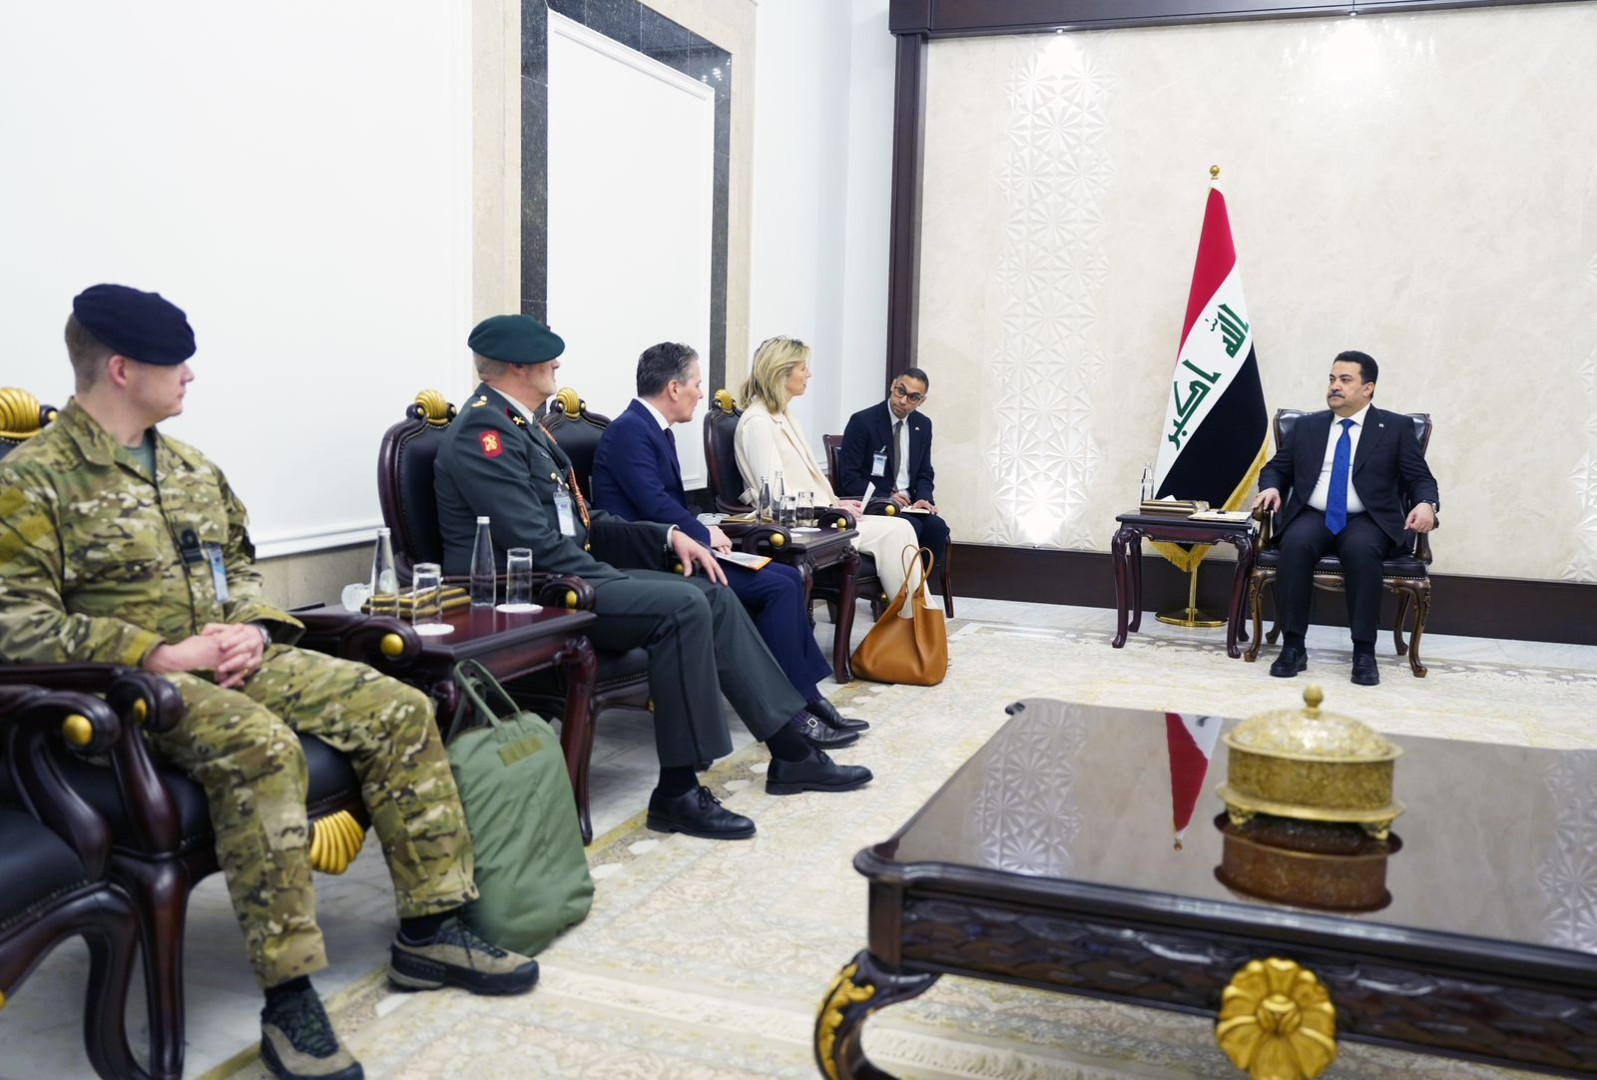 السوداني يزور هولندا ويبلغ وزيرة دفاعها قرار إعادة ترتيب العلاقة مع التحالف